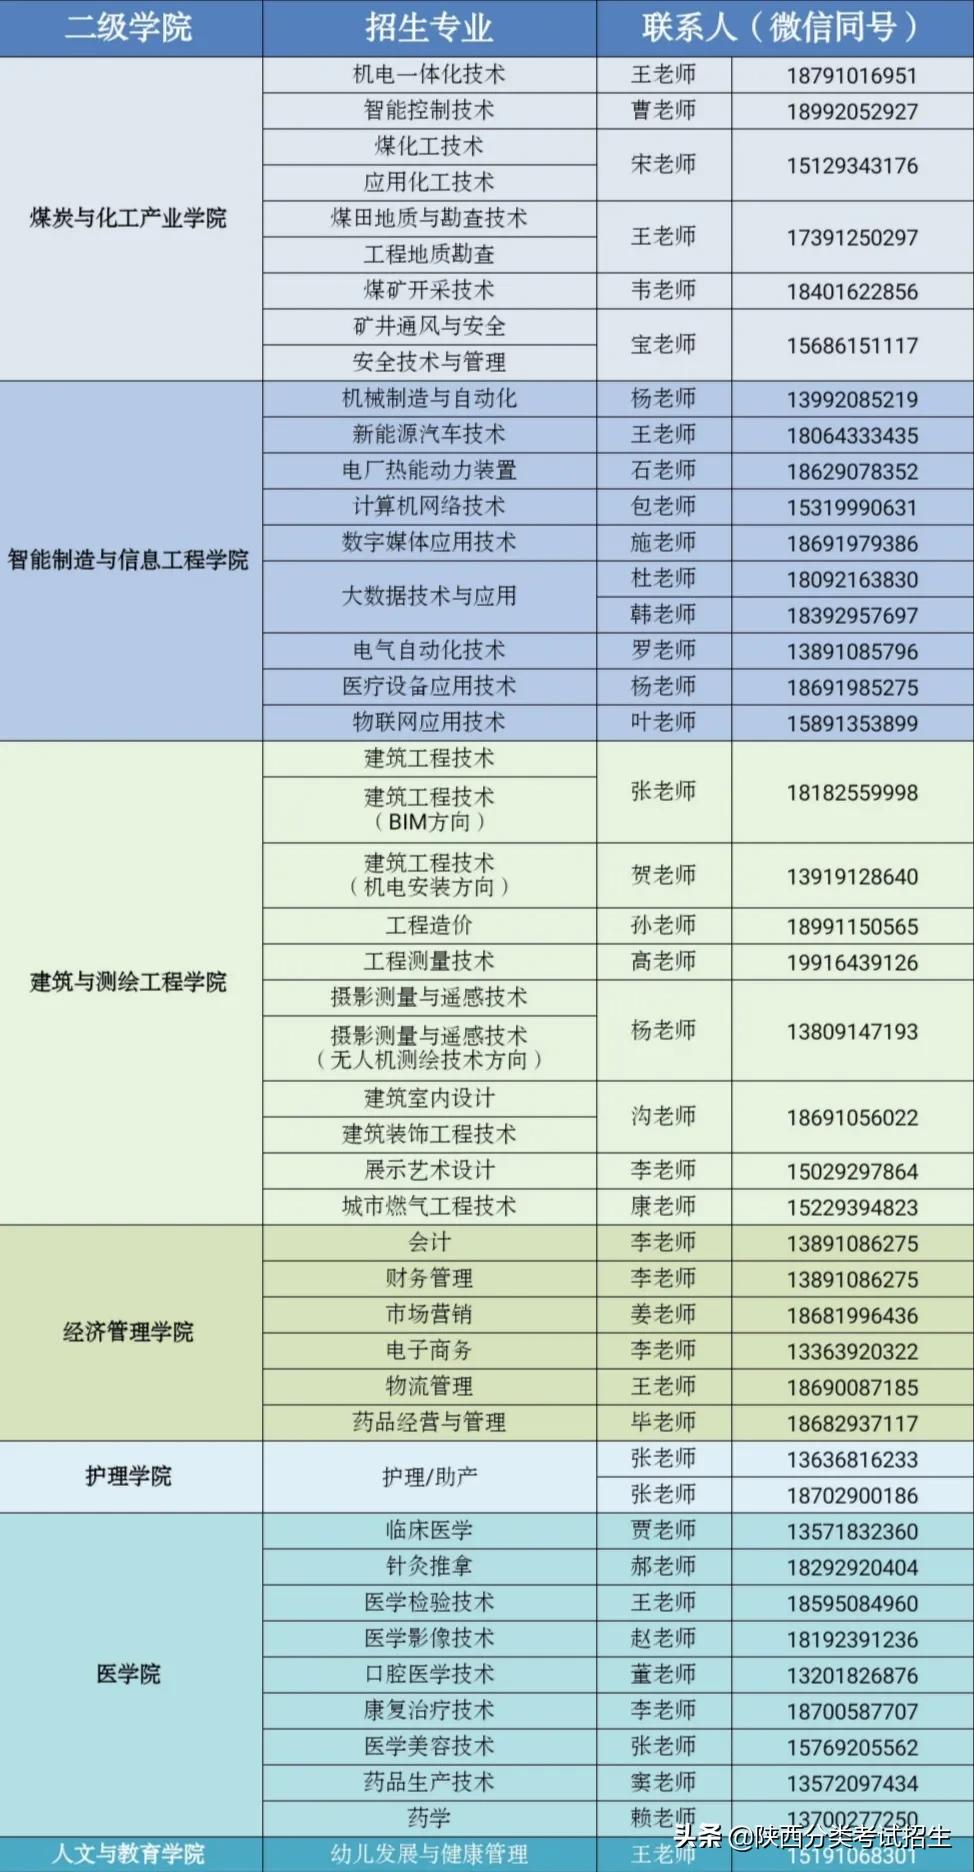 「报考指南」陕西能源职业技术学院2021年单独考试报考指南